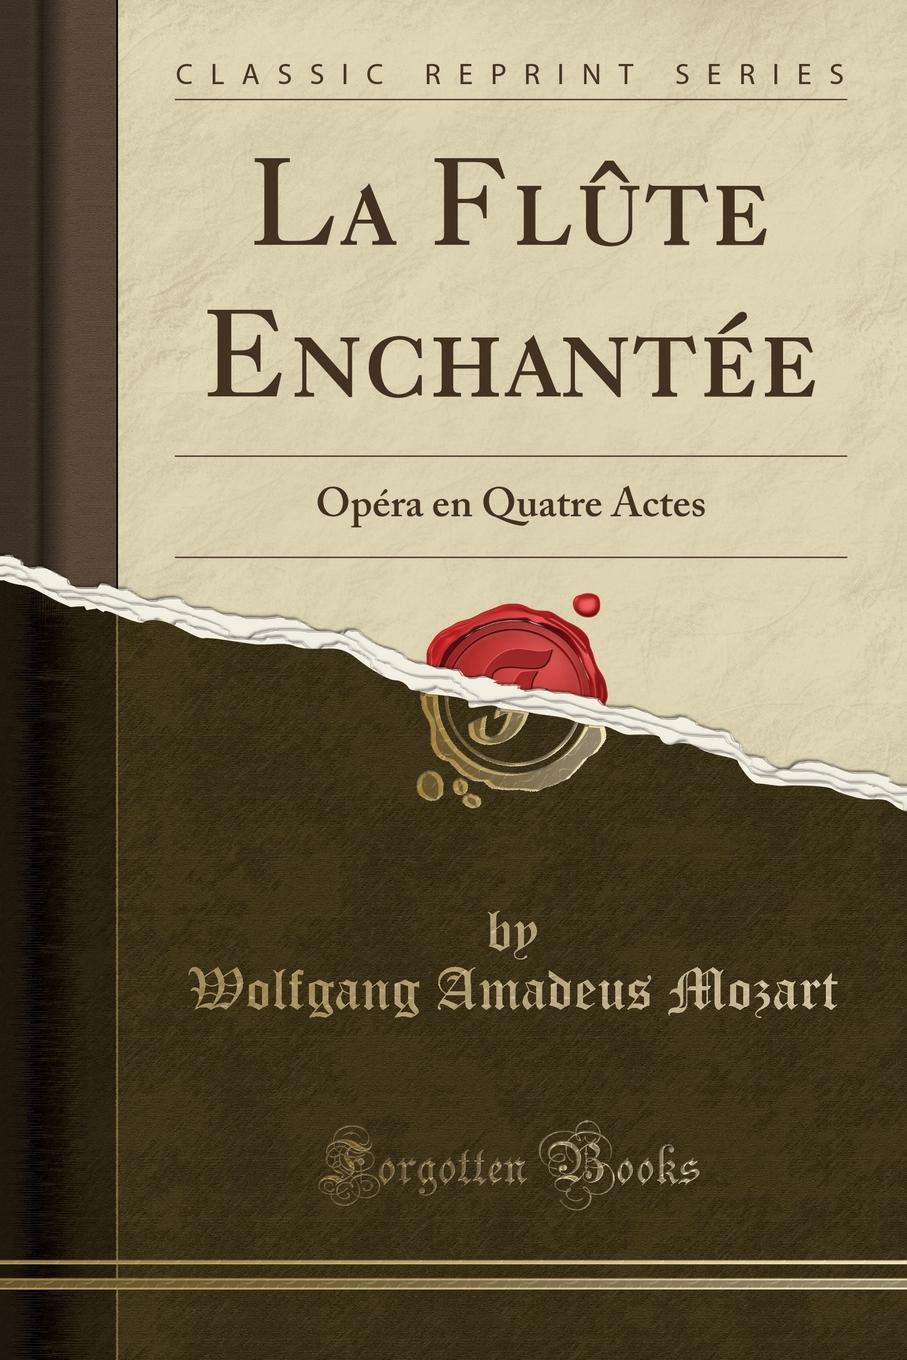 La Flute Enchantee. Opera en Quatre Actes (Classic Reprint)